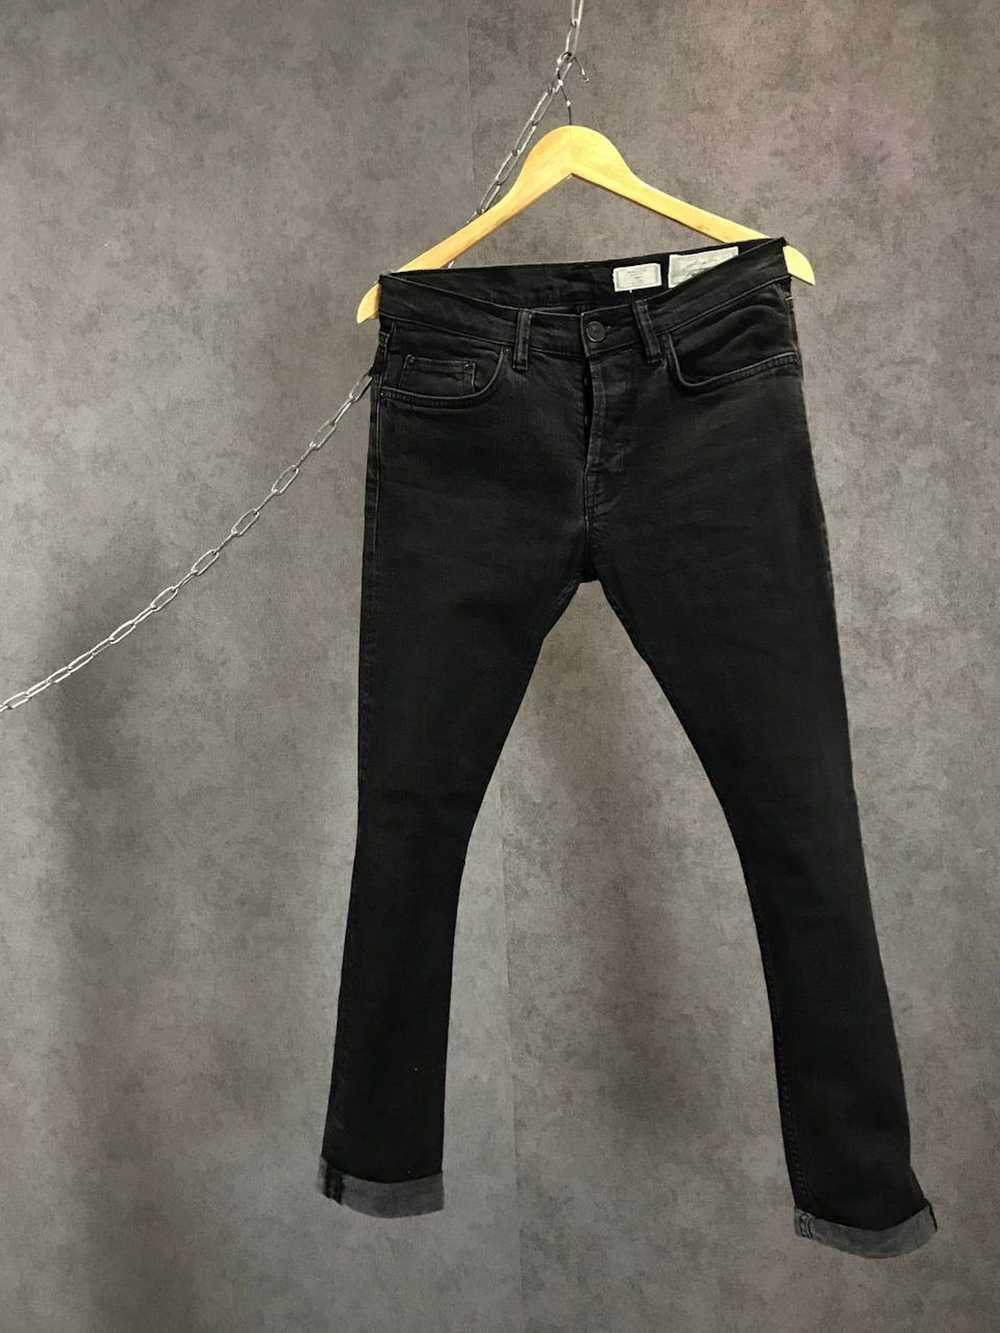 Allsaints Allsaints razor jeans - image 1